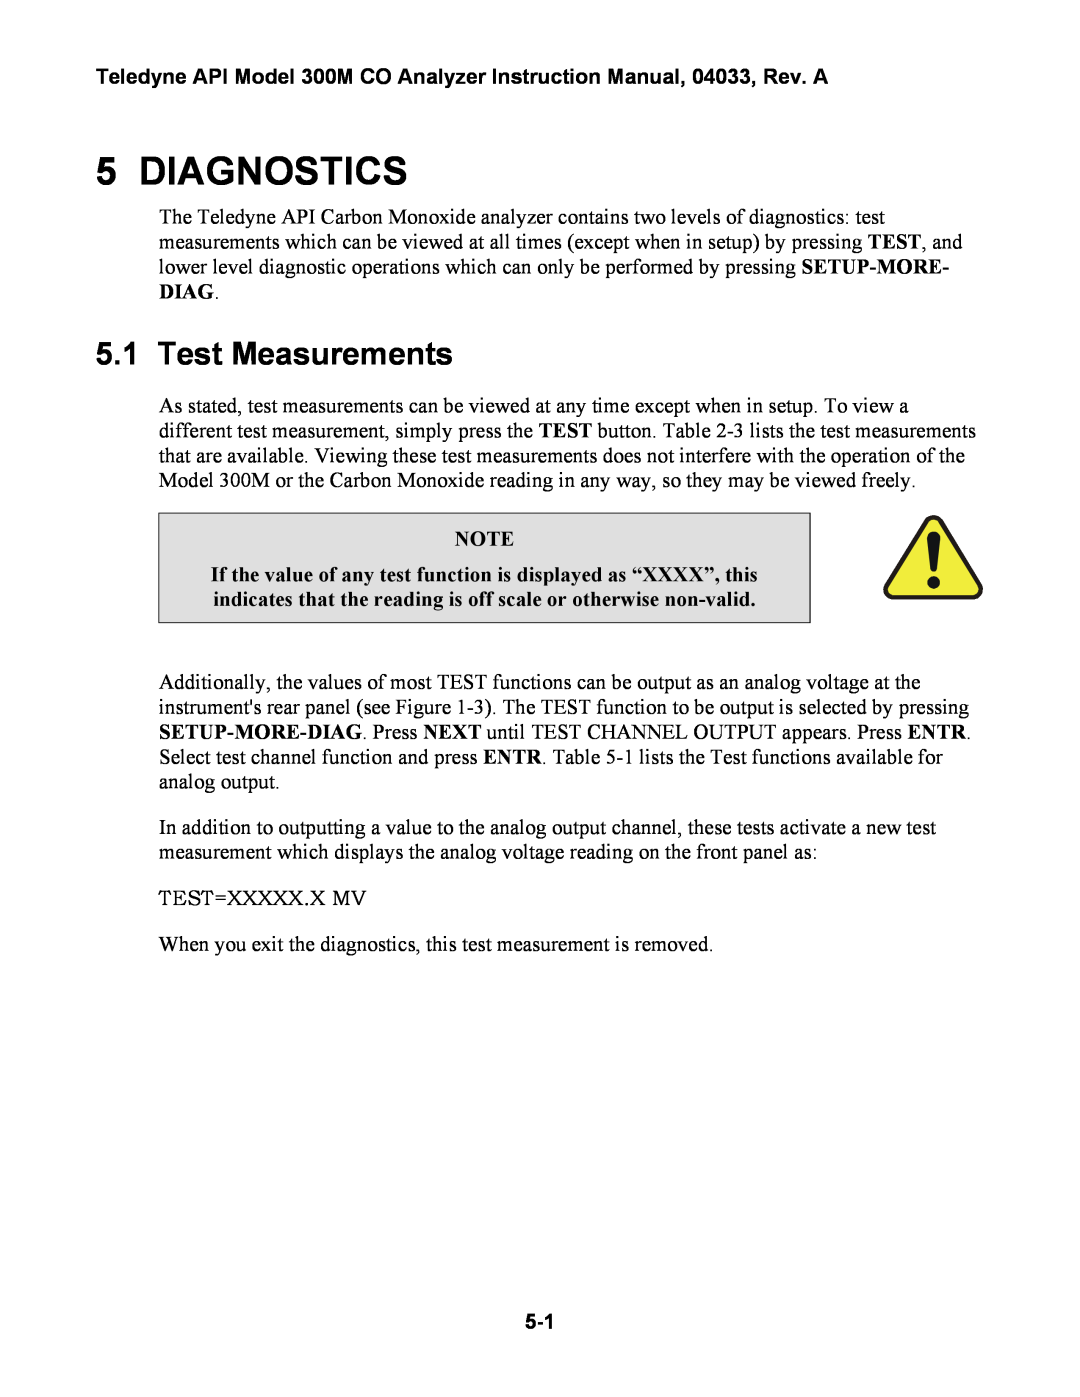 Teledyne 300M instruction manual Diagnostics, Test Measurements 